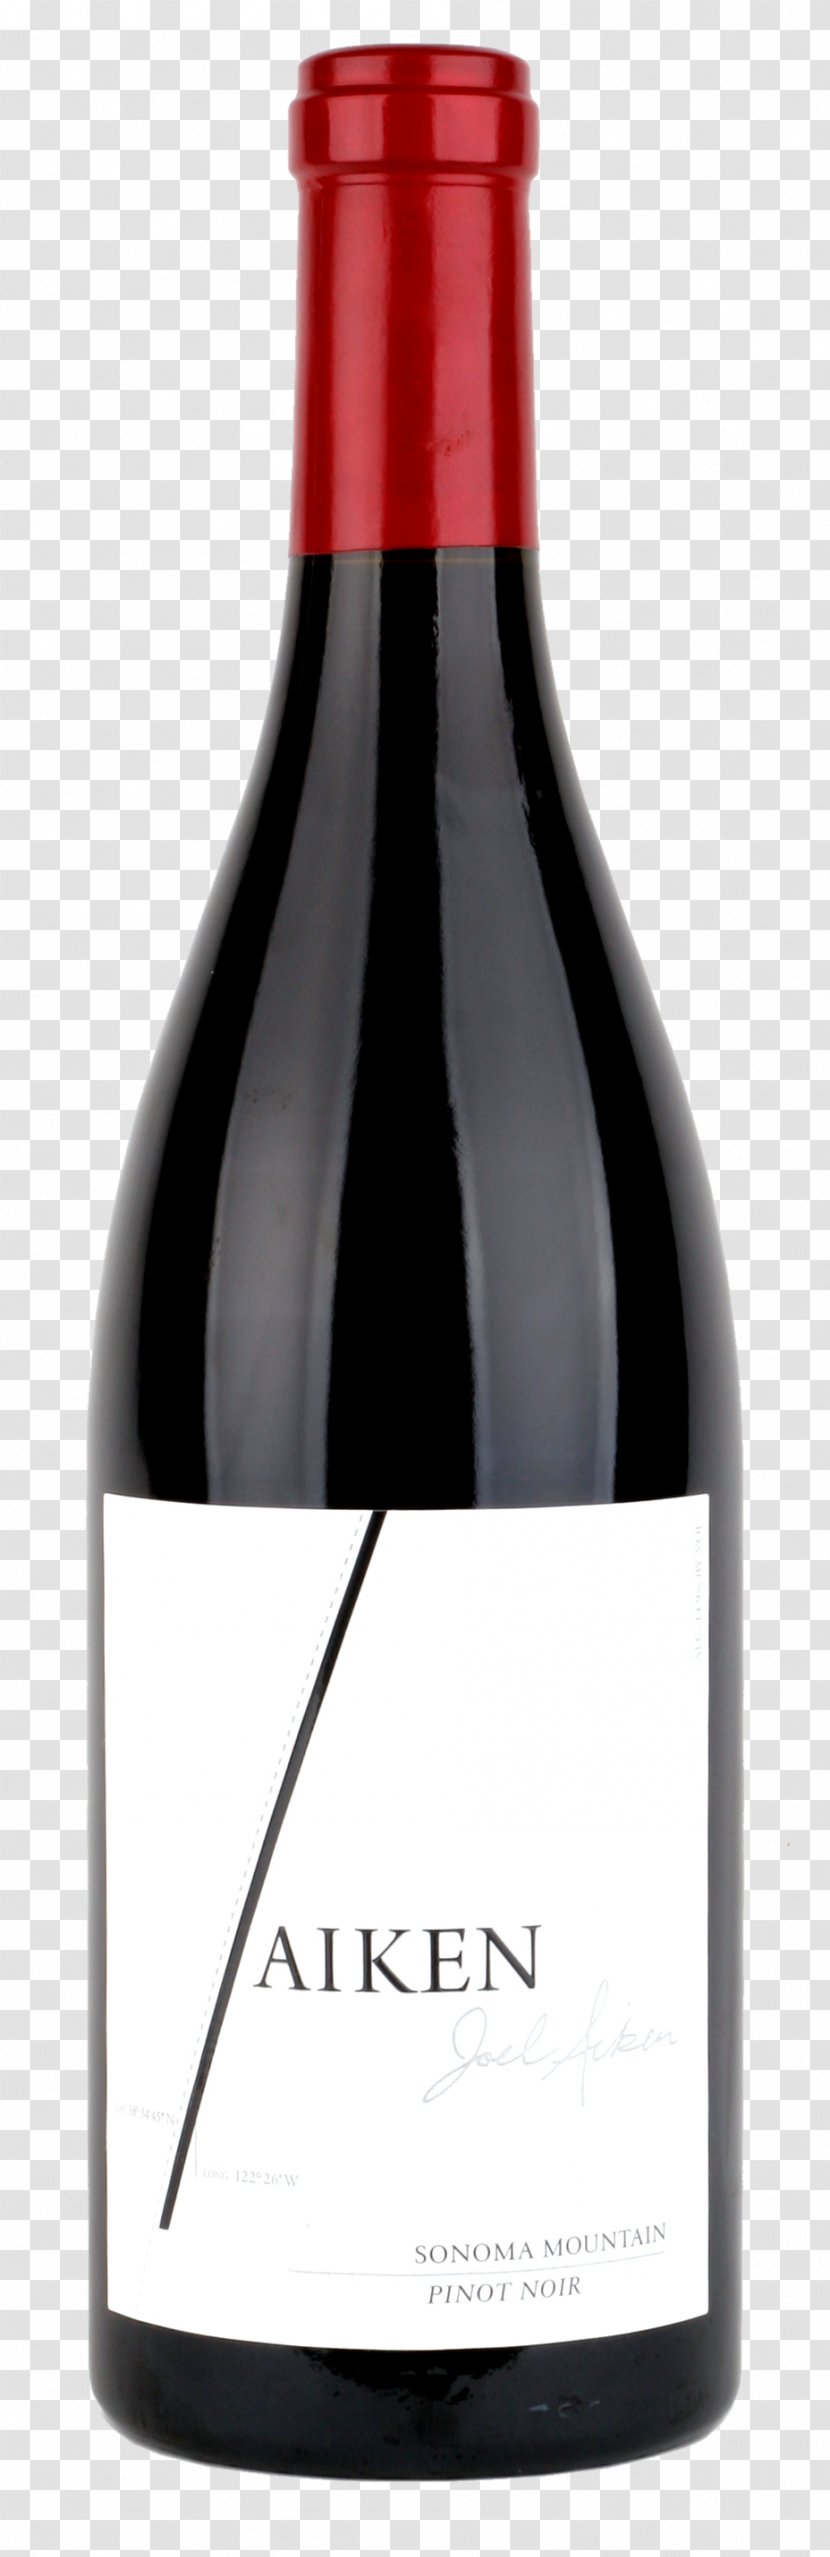 Red Wine Champagne Bottle - Tasting - Image Transparent PNG